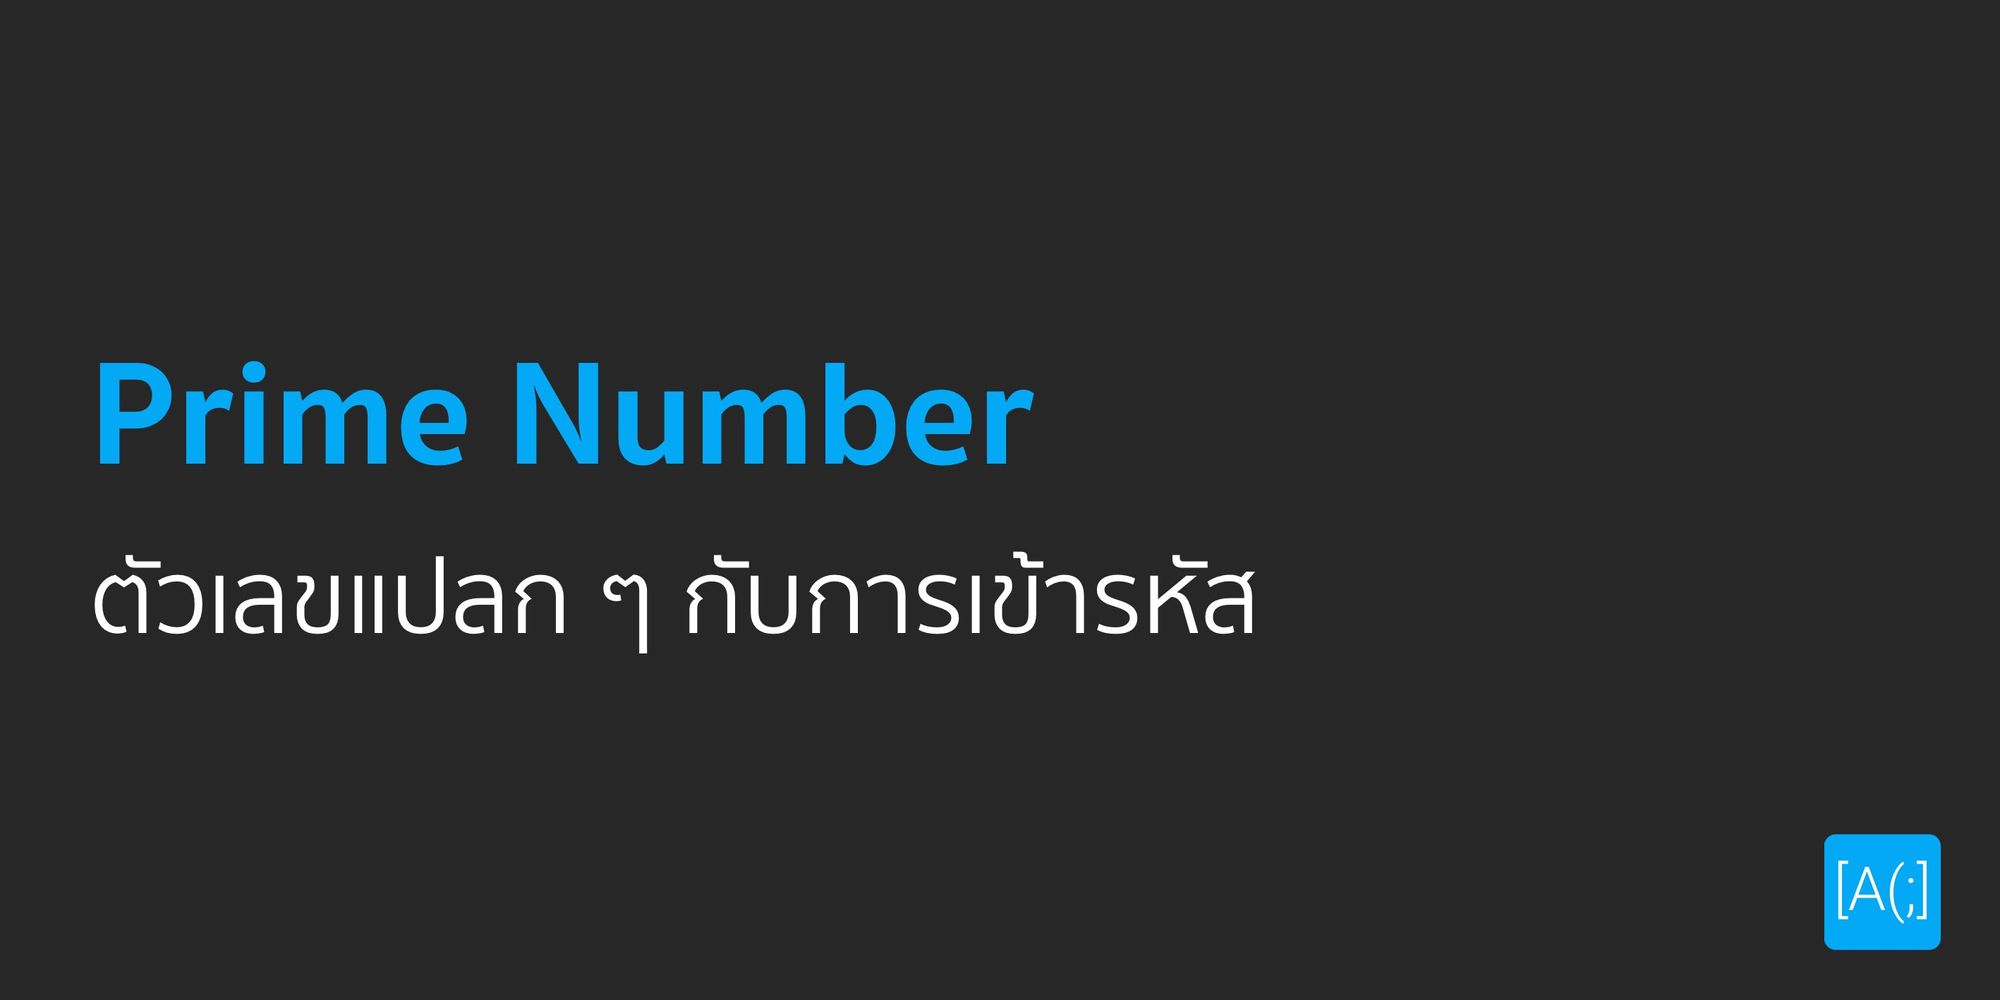 Prime Number ตัวเลขแปลก ๆ กับการเข้ารหัส